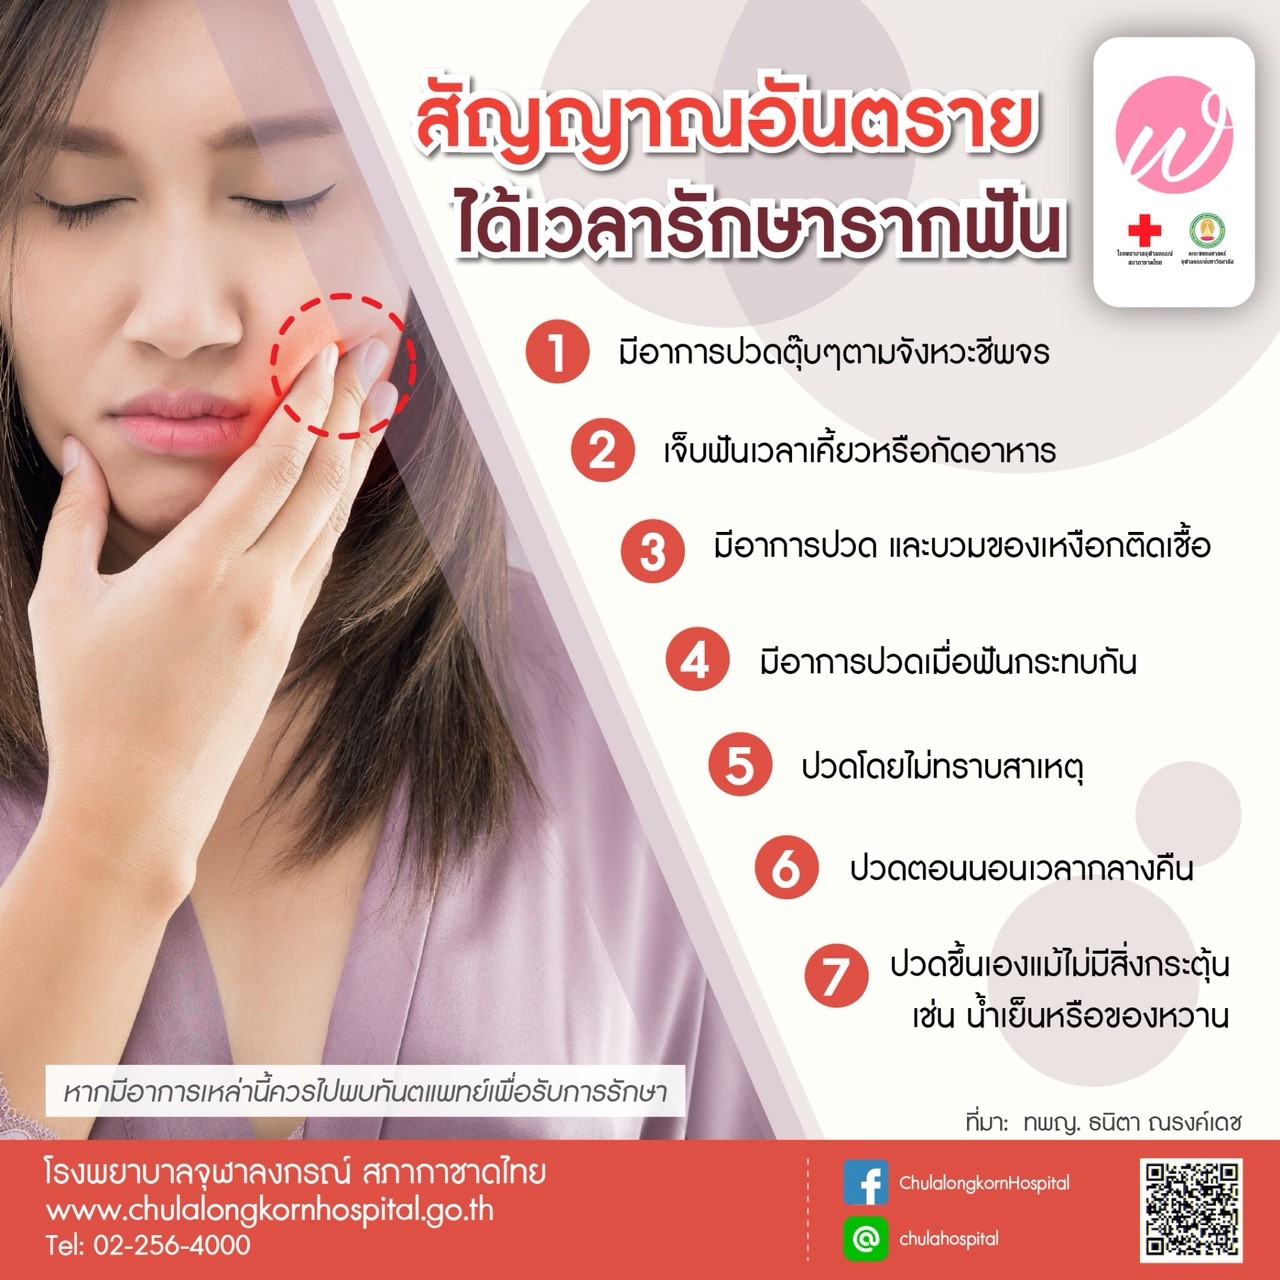 สัญญาณอันตรายได้เวลารักษารากฟัน - โรงพยาบาลจุฬาลงกรณ์ สภากาชาดไทย